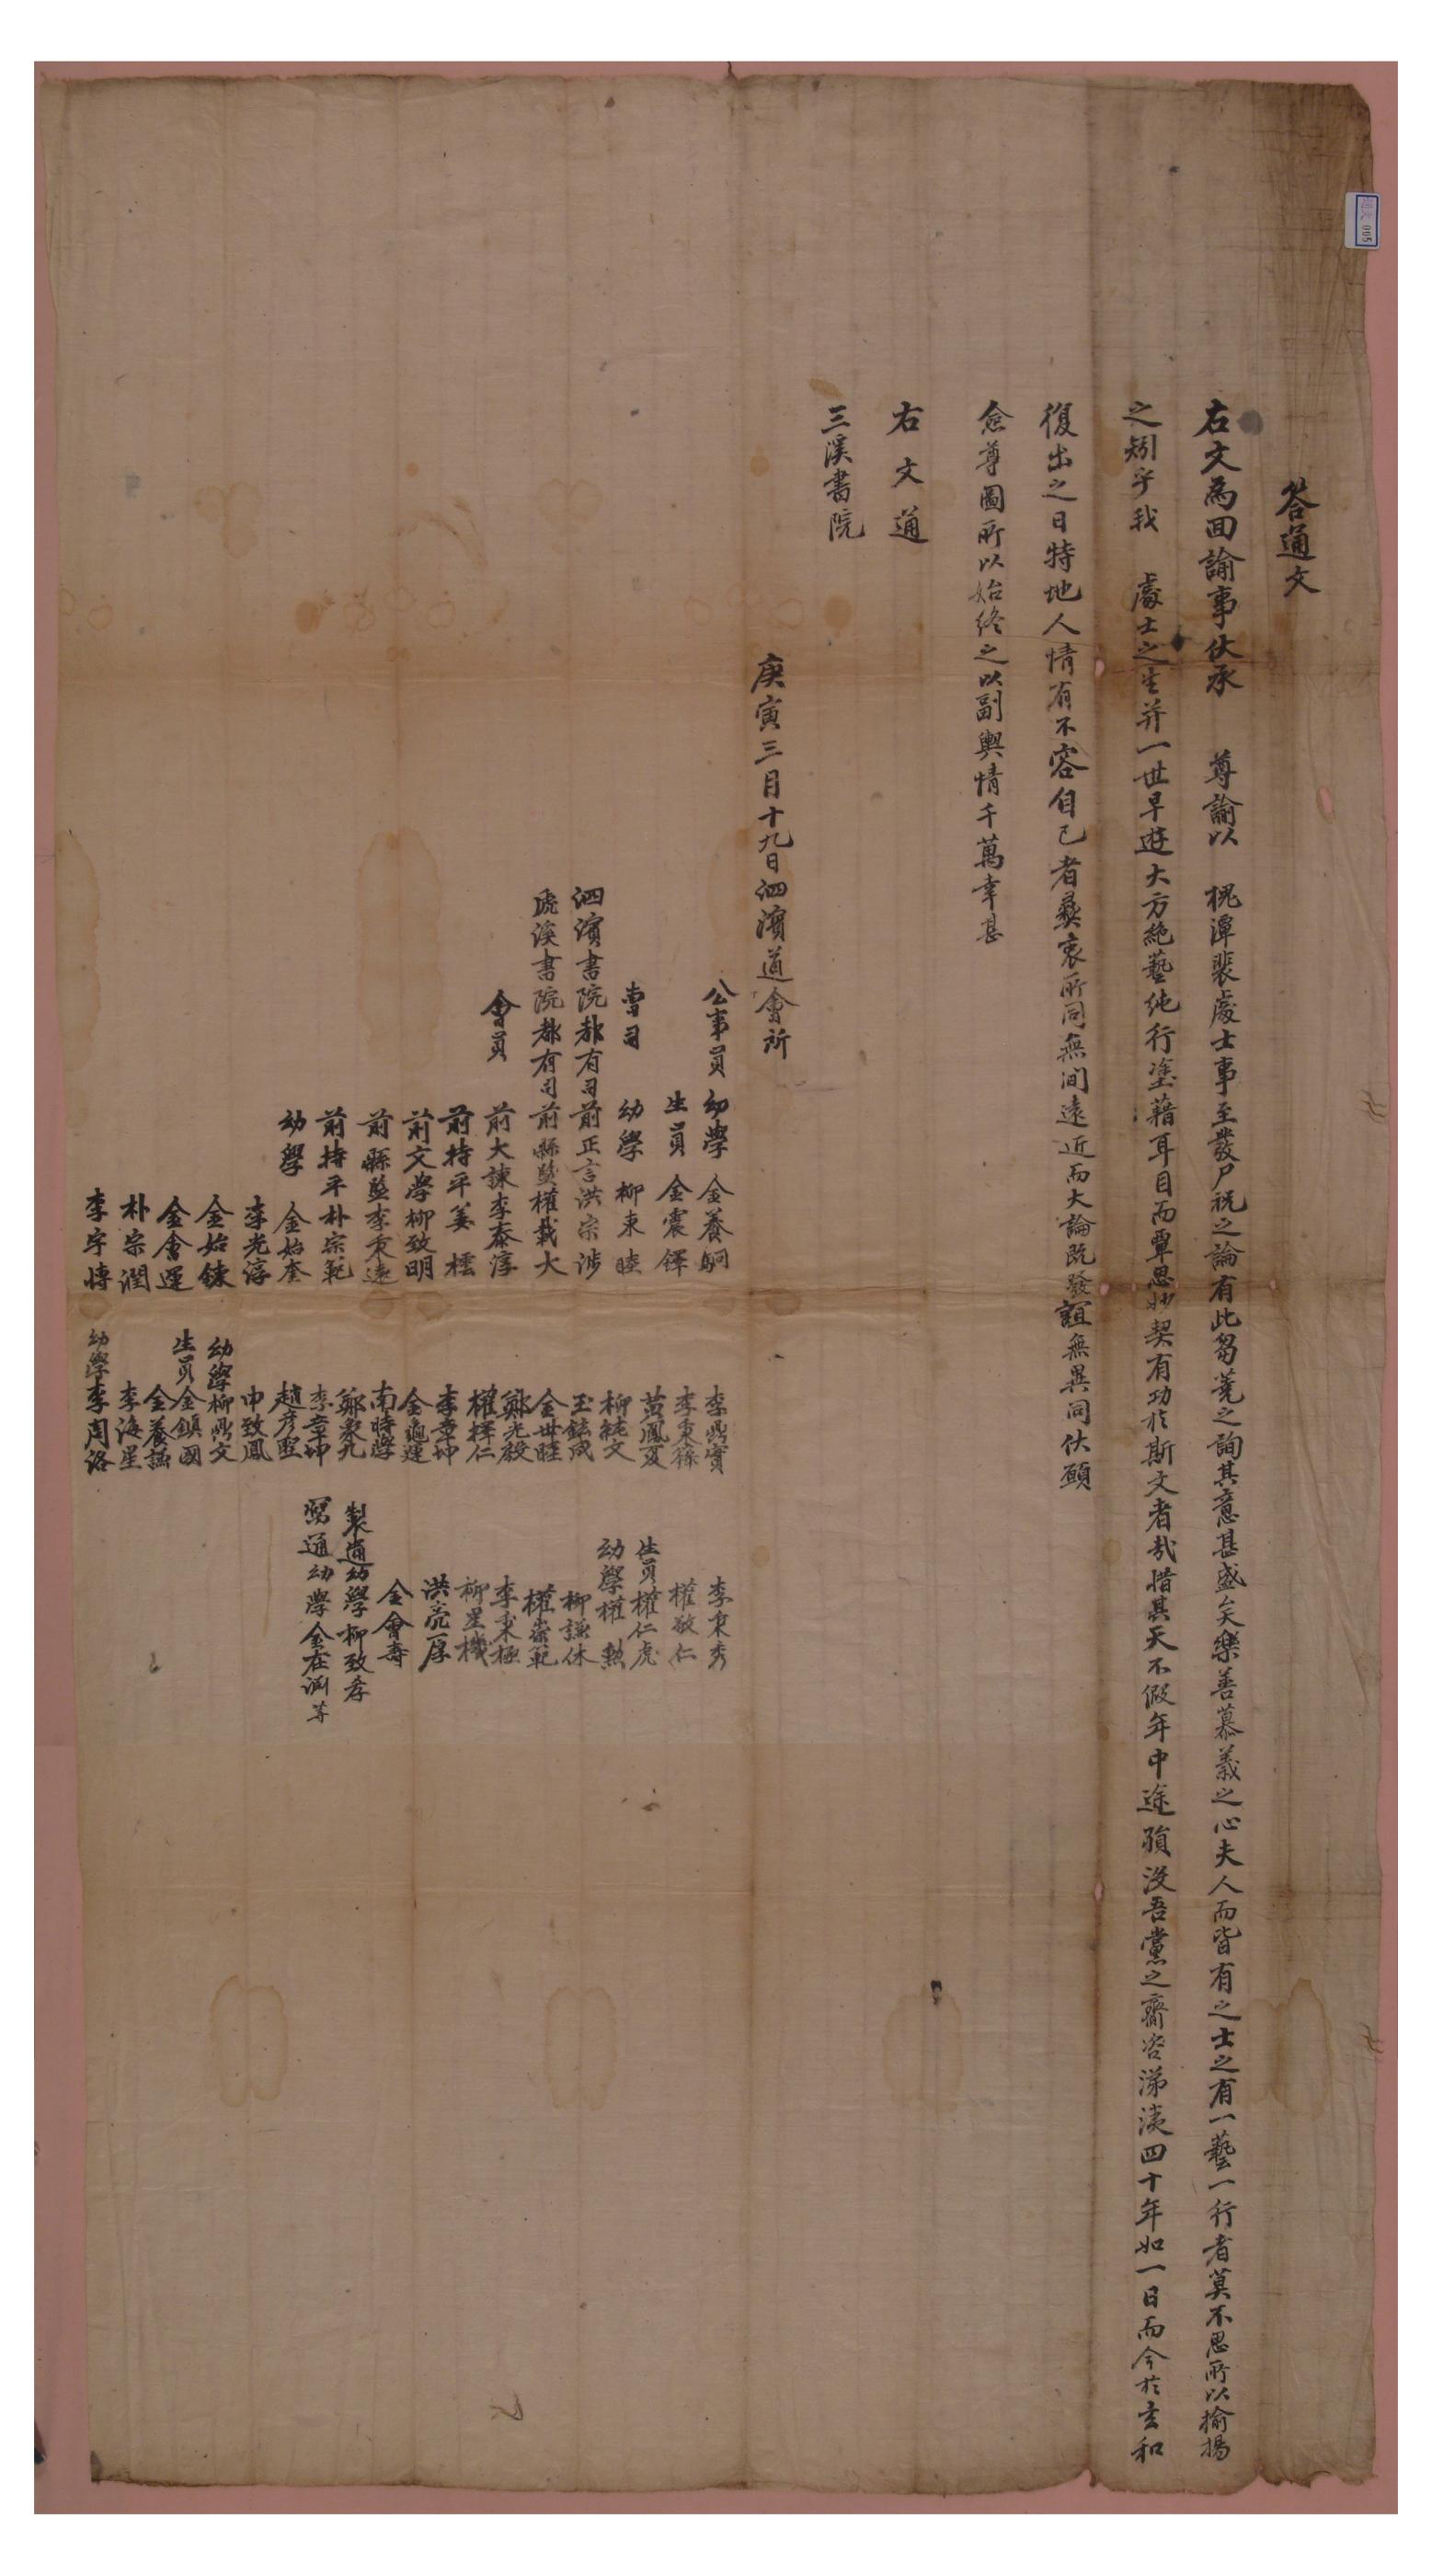 1830년에 사빈도회소 김진탁 등이 배상열의 위패를 모시는 일에 찬성한다는 내용으로 보낸 통문